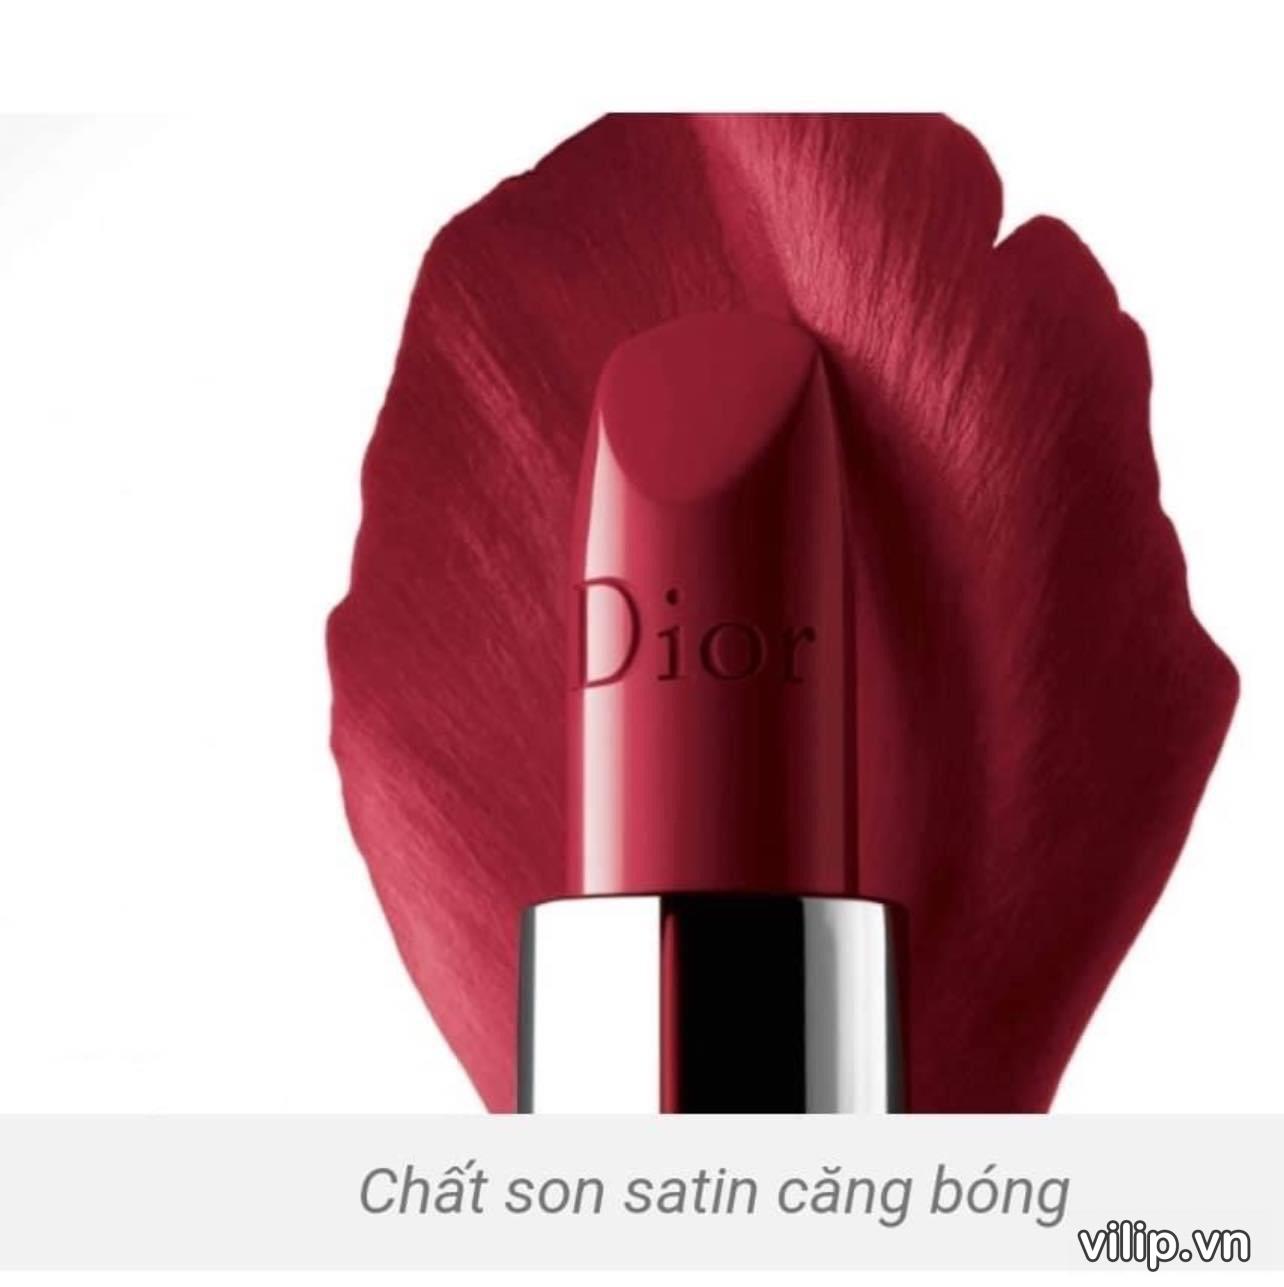 Son Dior Matte 724 Tendresse  Màu Hồng Nâu Đẹp Nhất  Son Dior